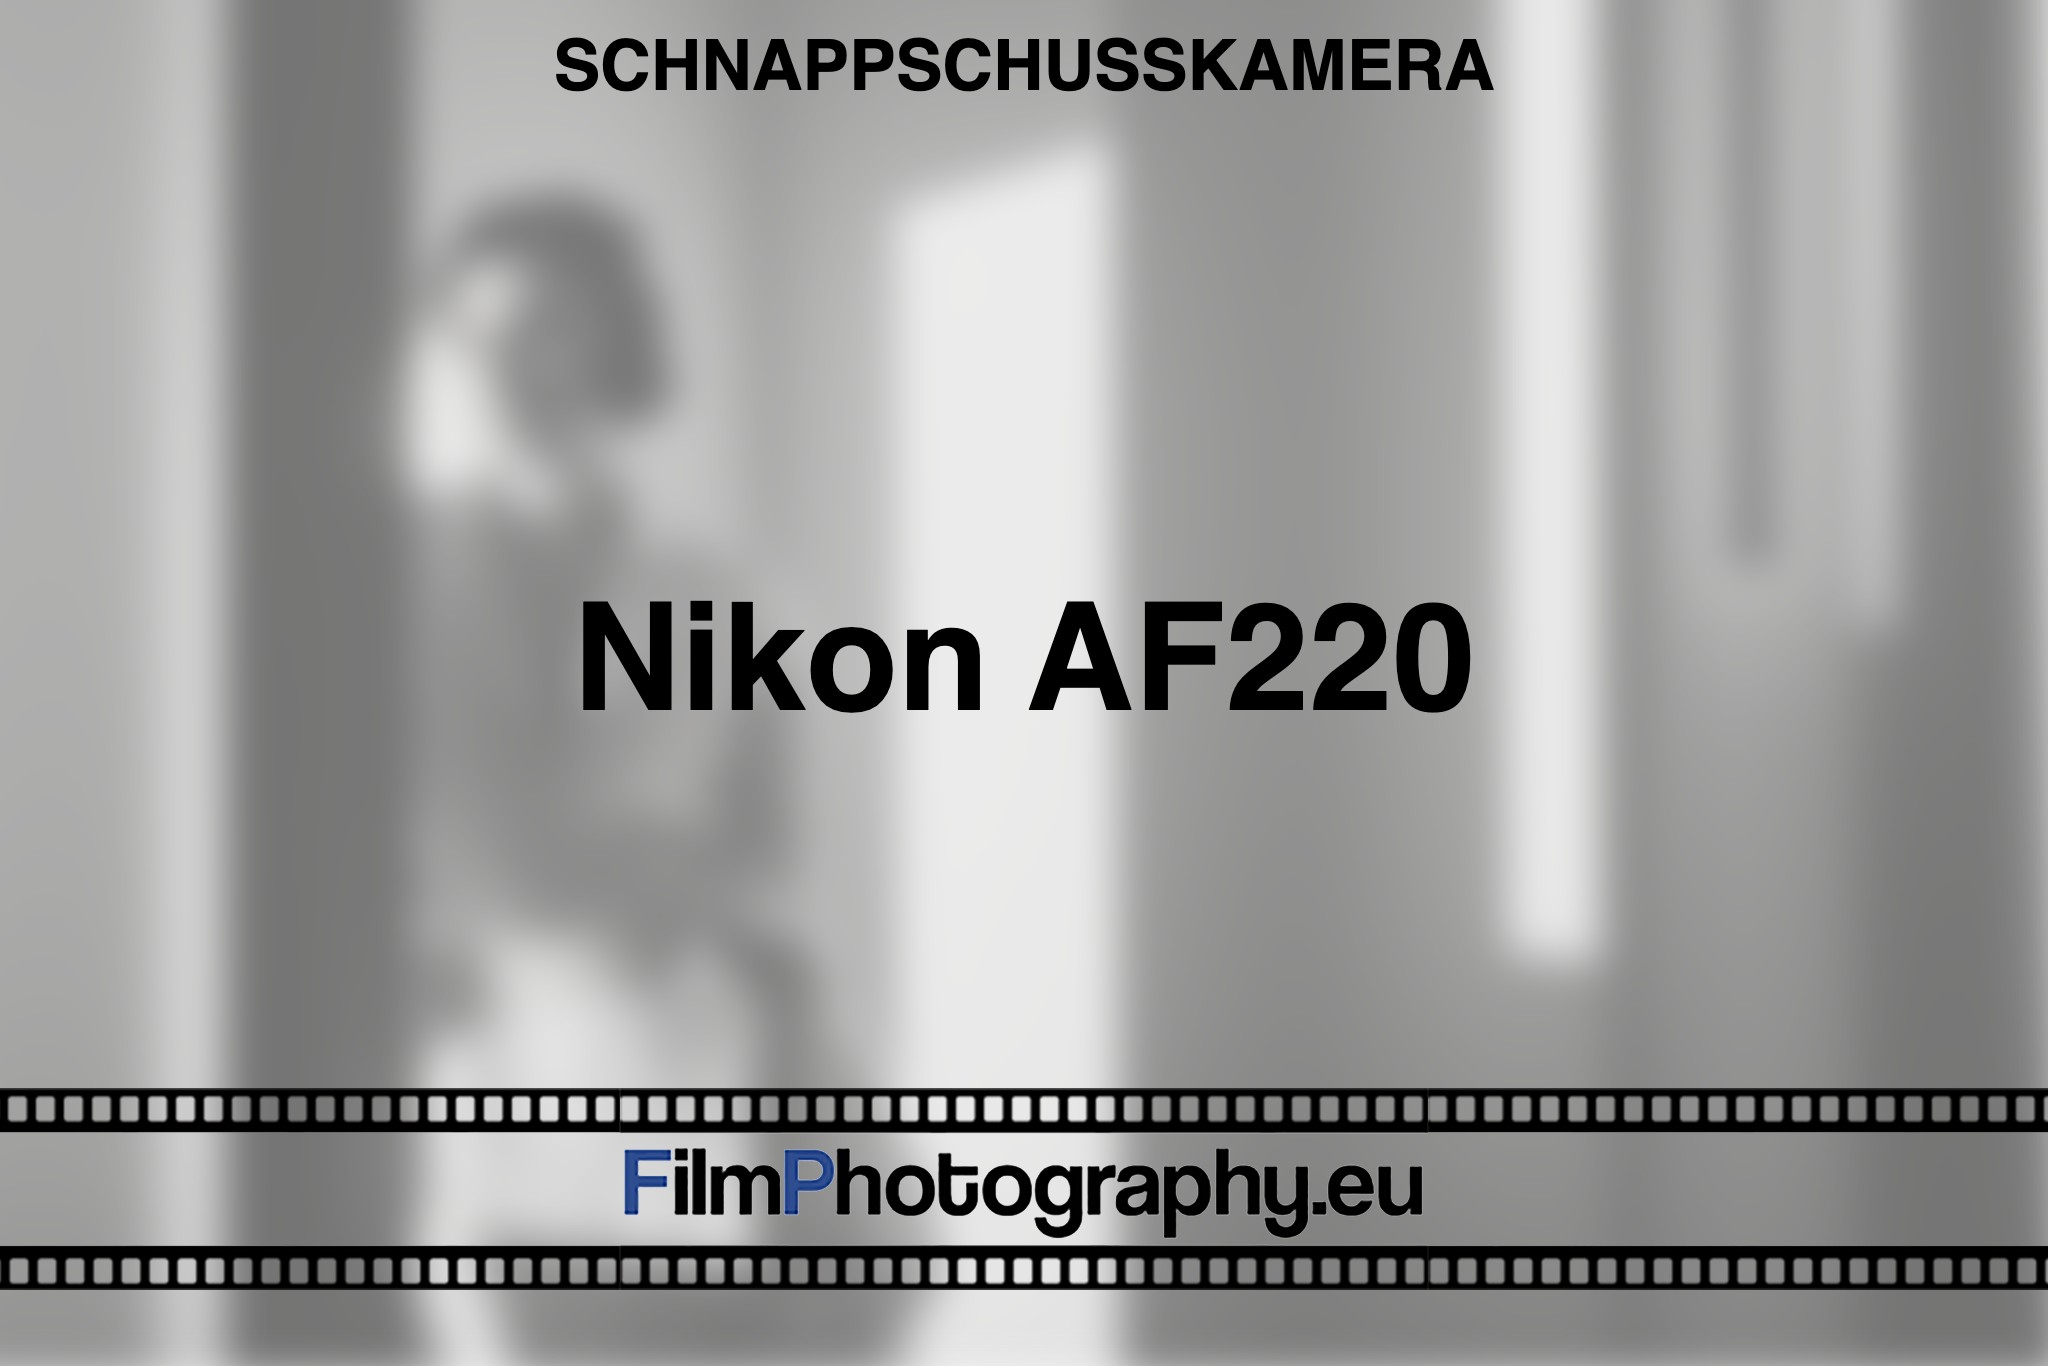 nikon-af220-schnappschusskamera-bnv